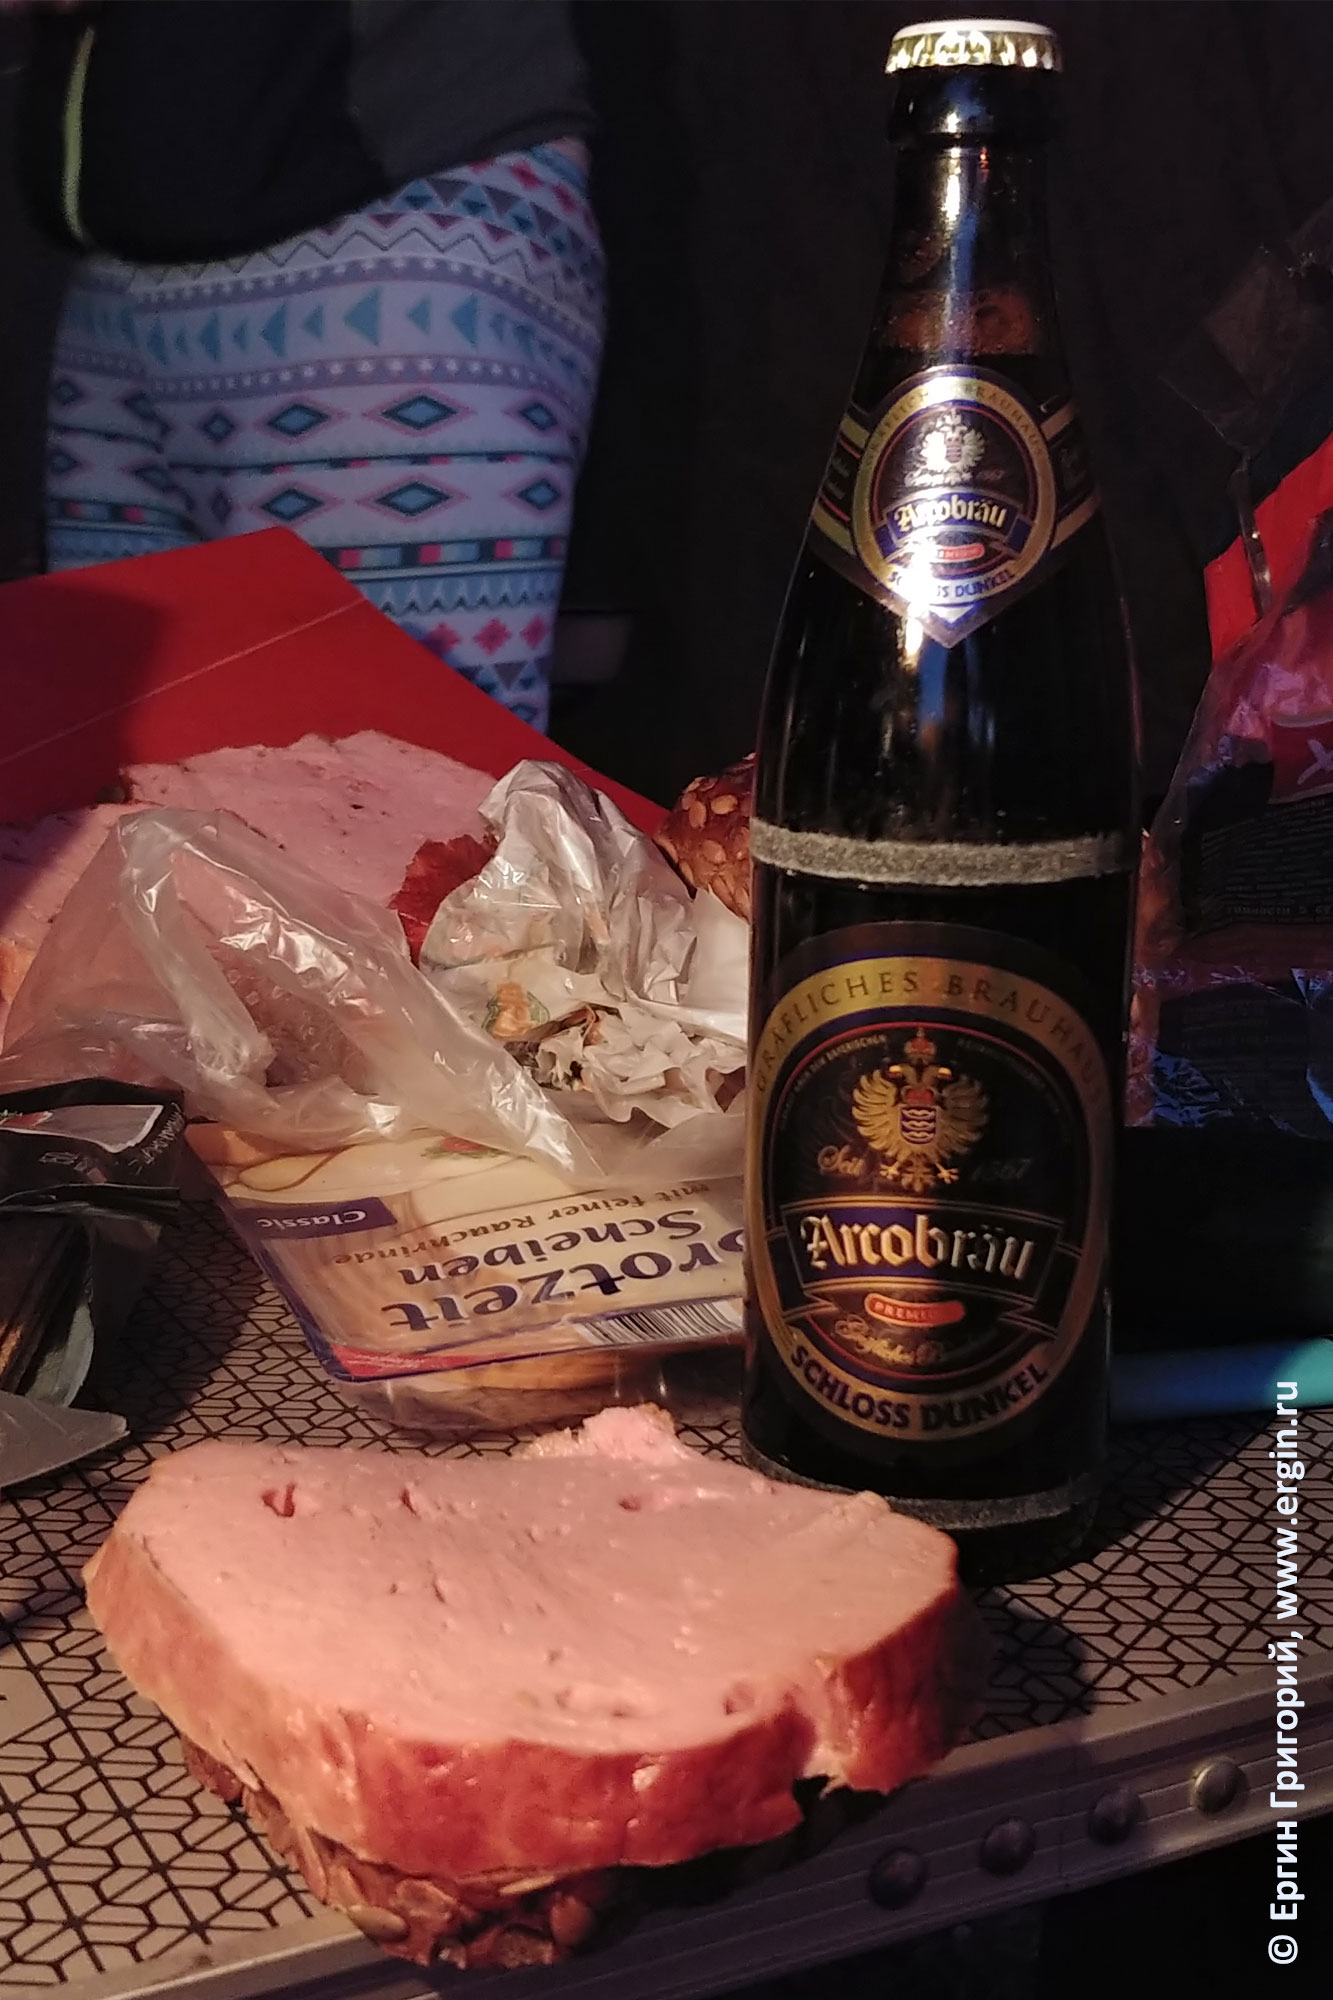 Libekase мясной хлеб и местное баварское пиво Arcobrau